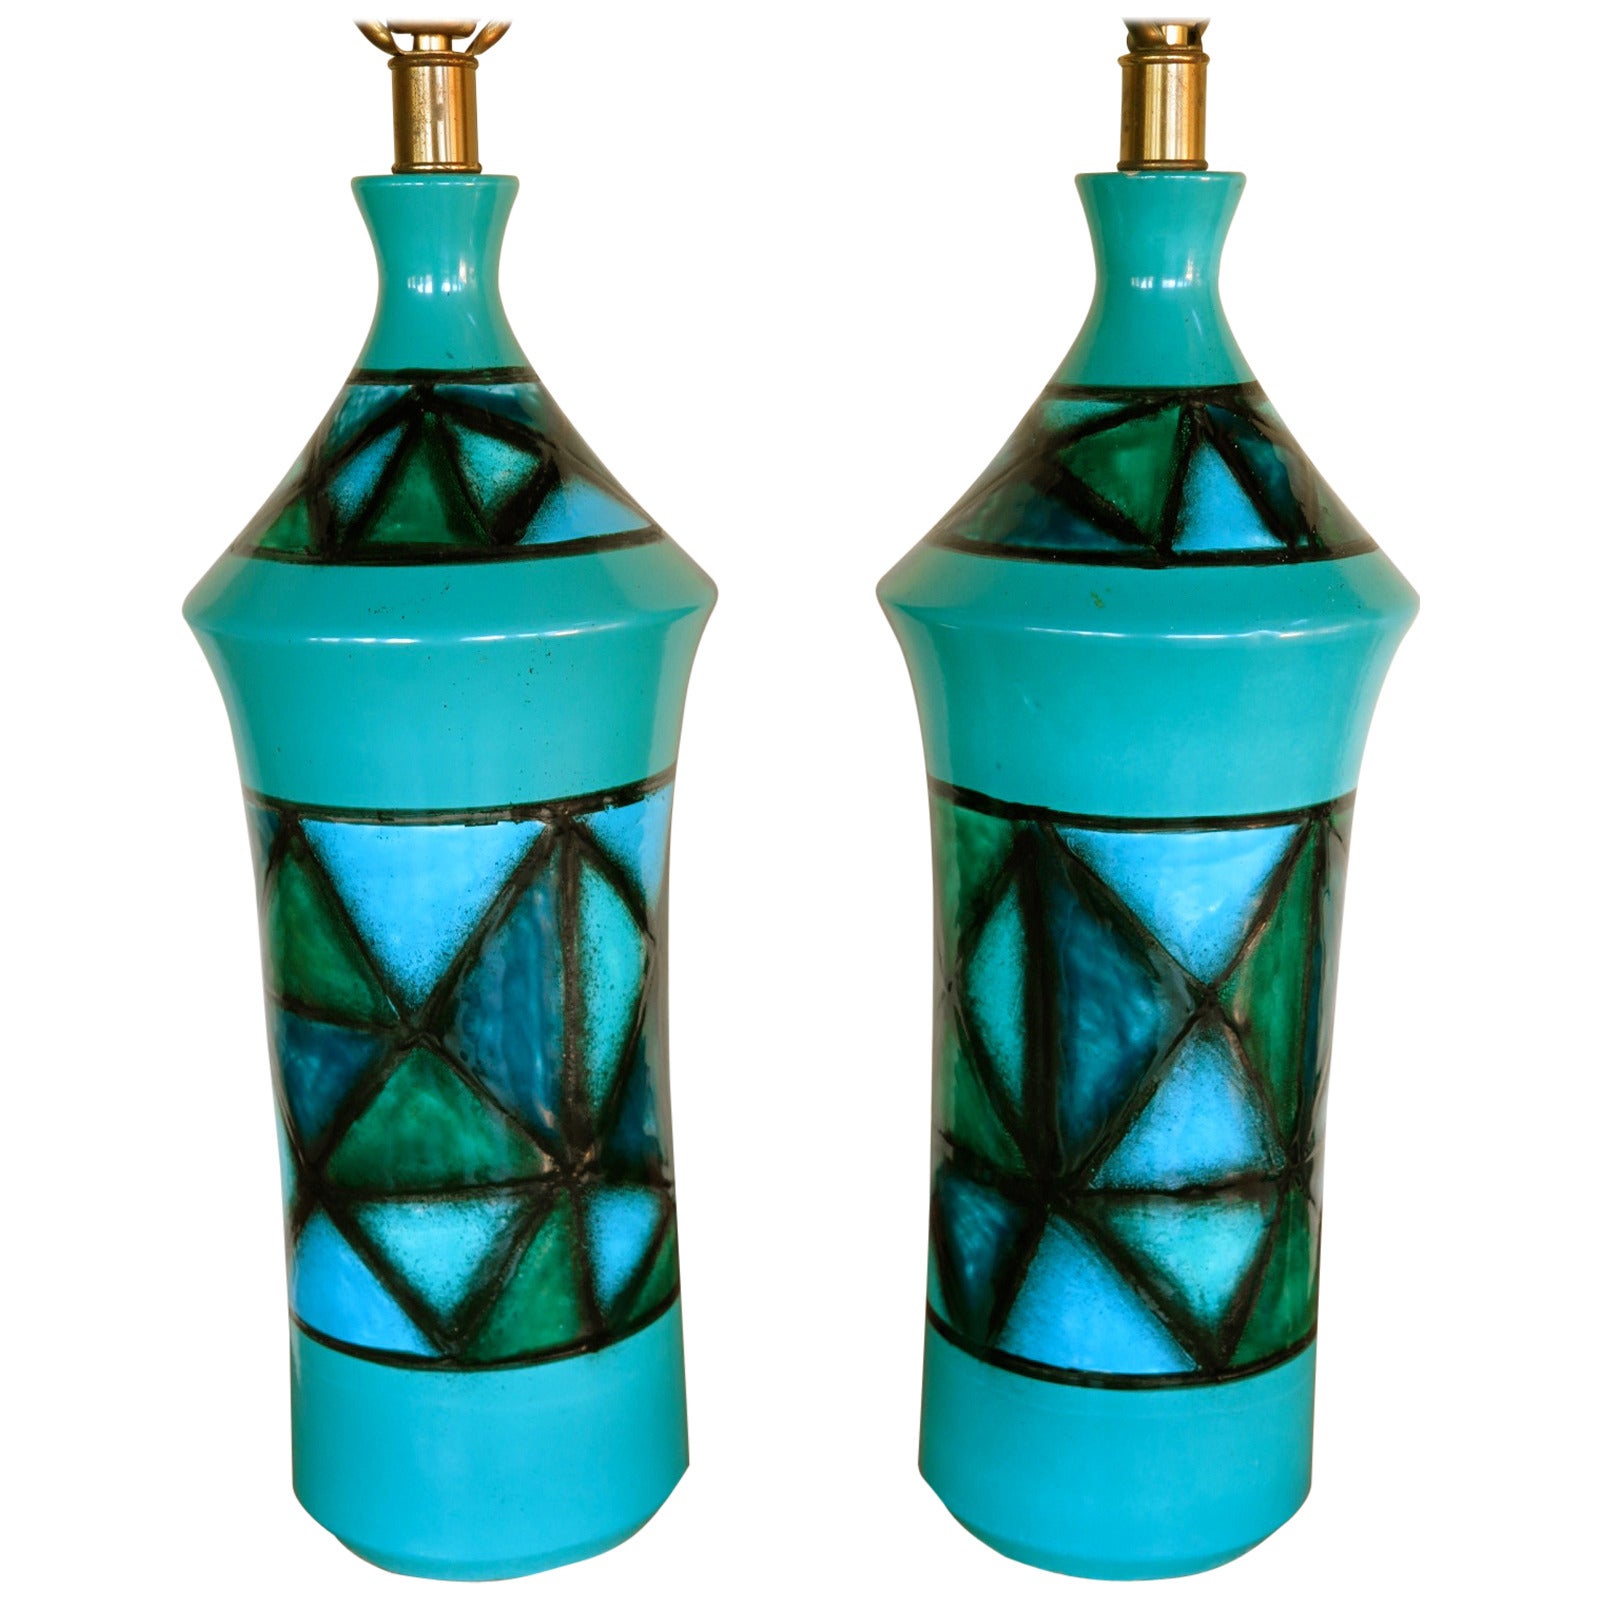 Pair of Italian Ceramic Turquoise Lamps, circa 1960s